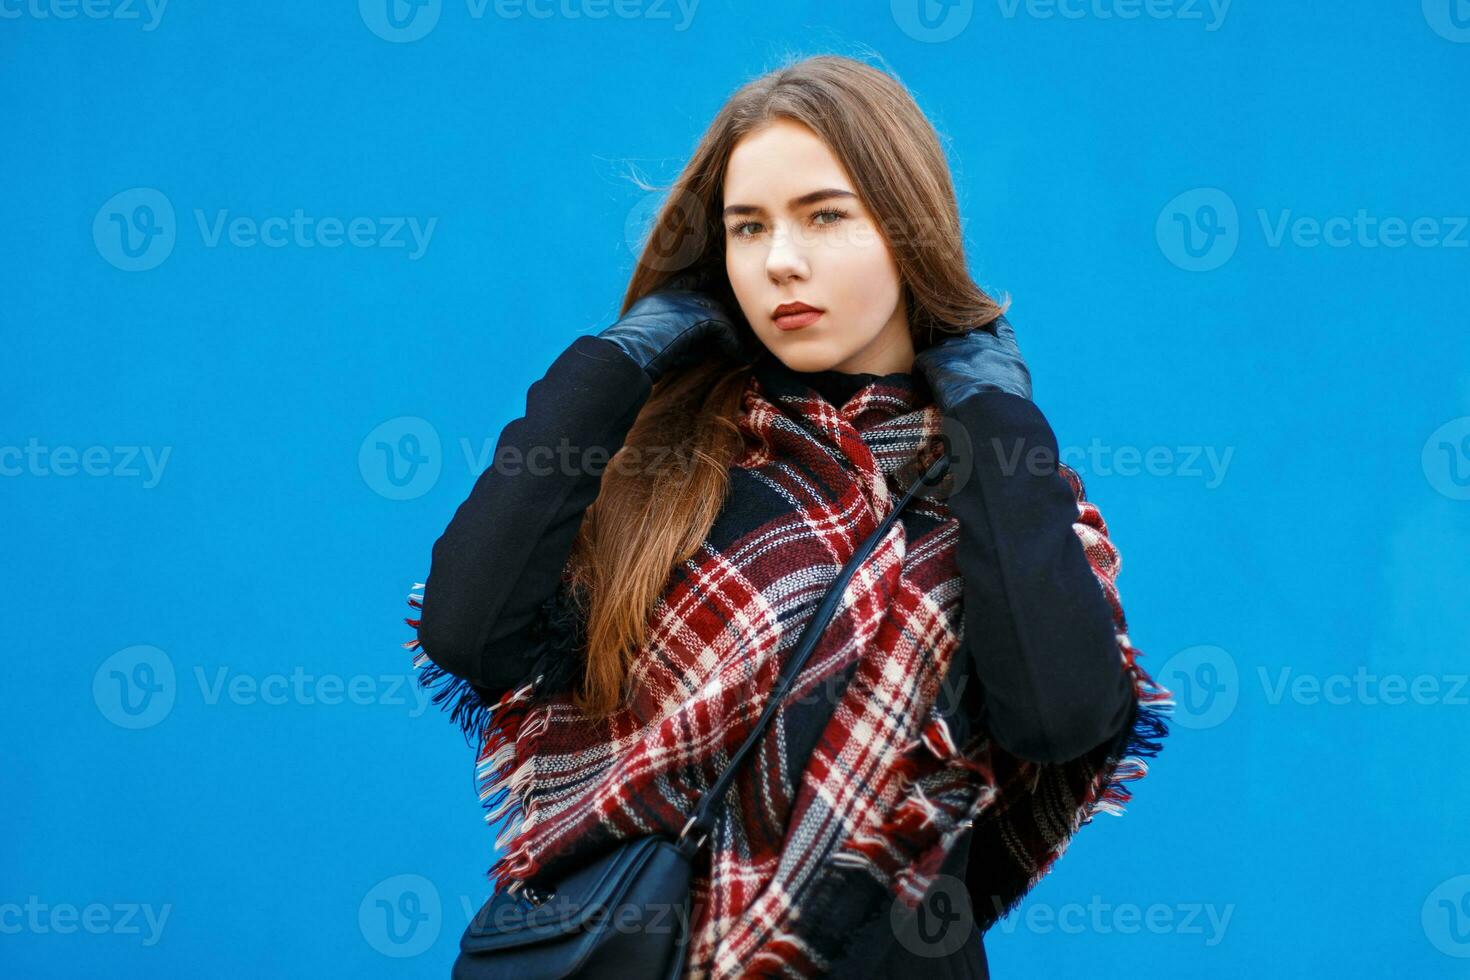 magnifique femme avec une écharpe et manteau posant près une brillant bleu mur photo